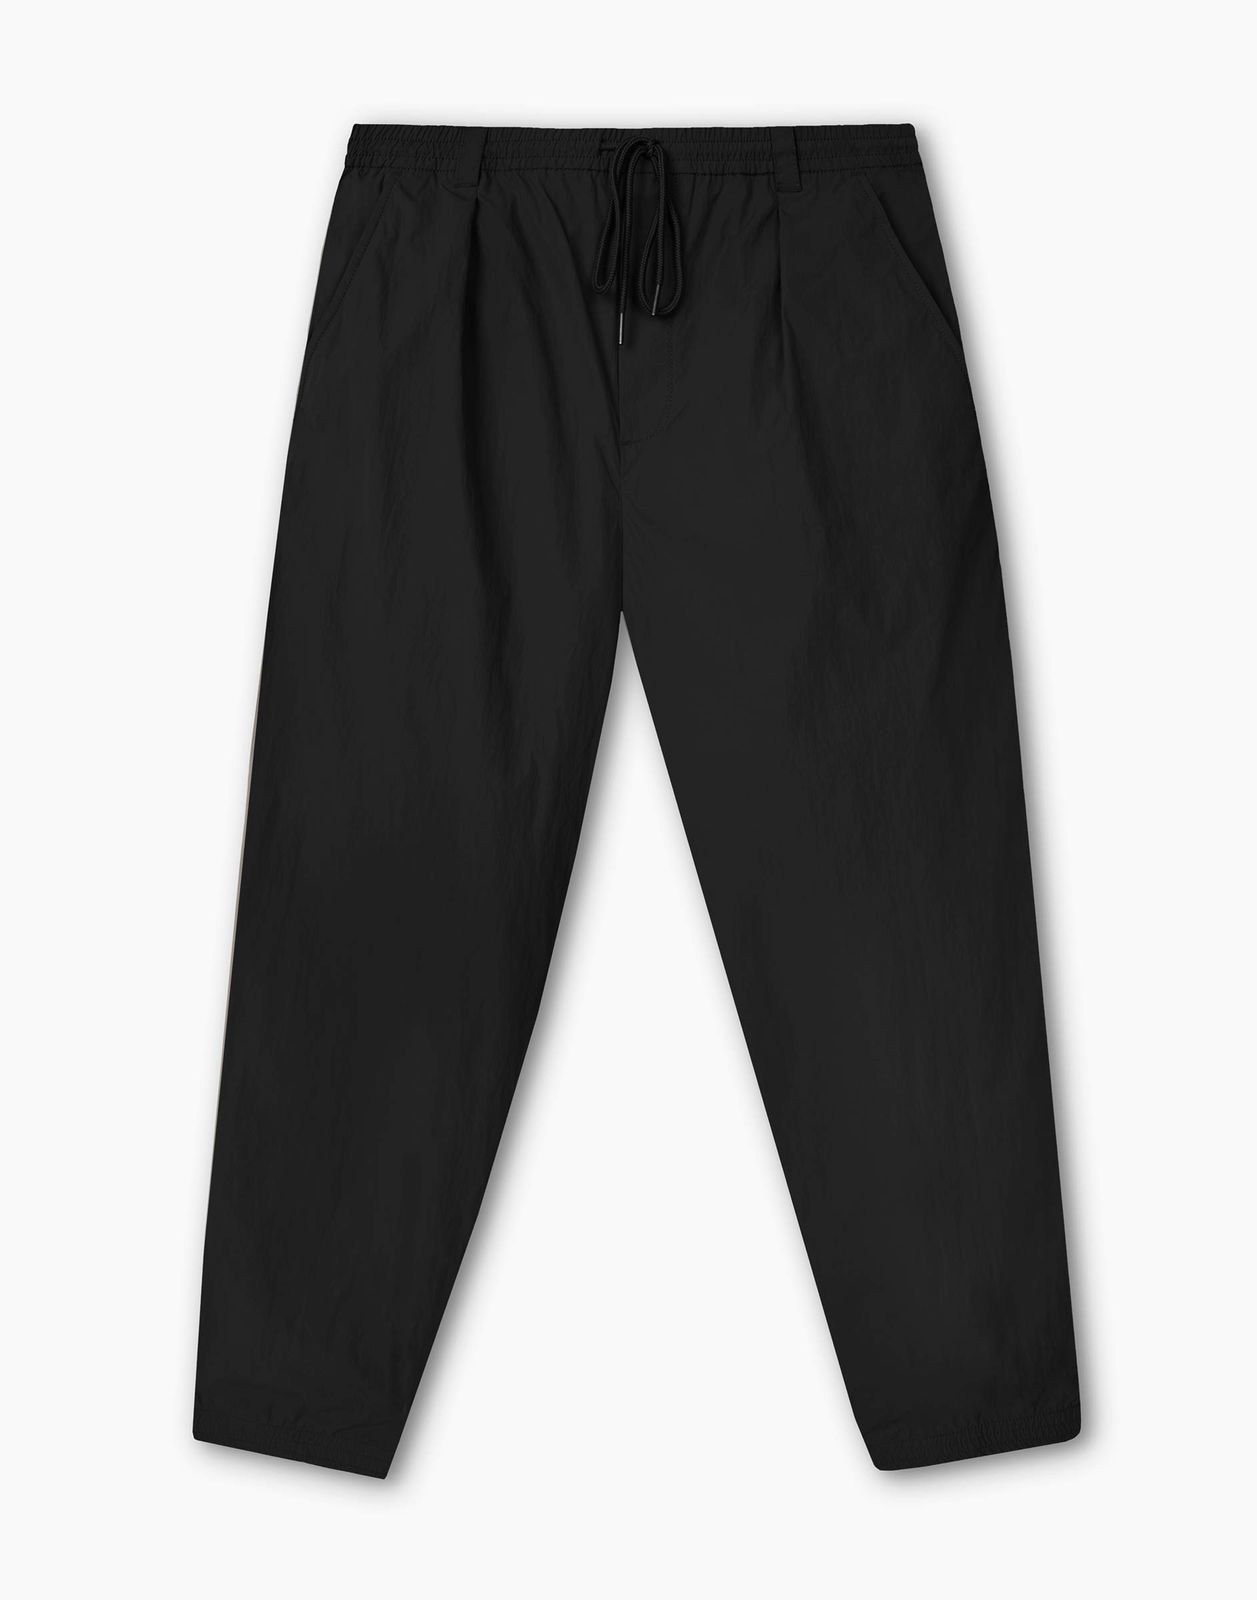 Брюки мужские Gloria Jeans BPT003489 черный S/182 - купить в Gloria Jeans (со склада МегаМаркет) , цена на Мегамаркет